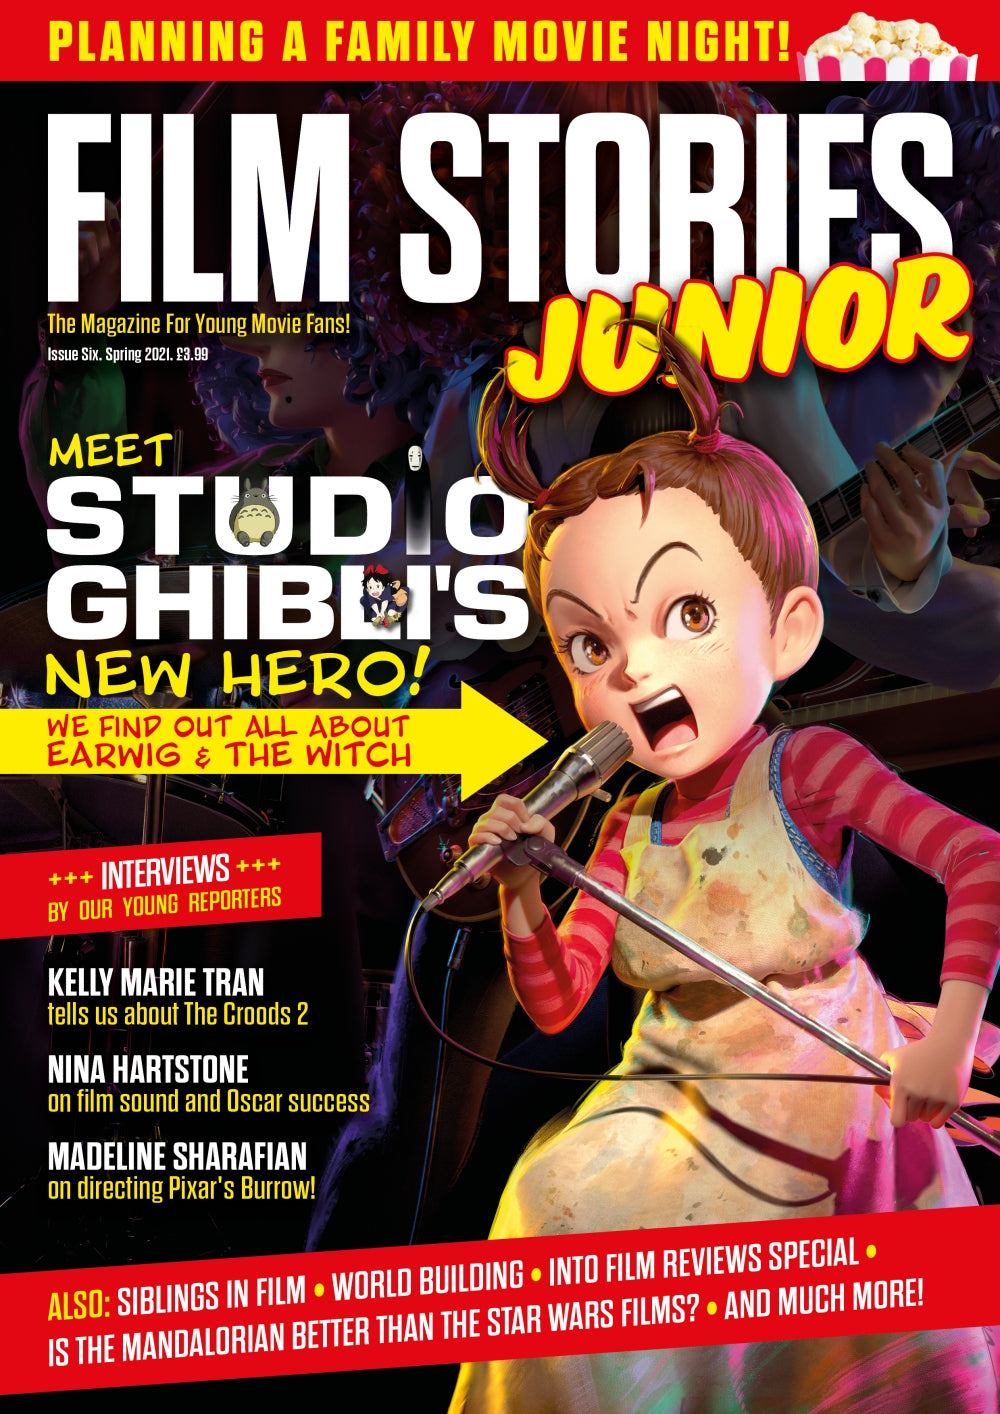 Film Stories Junior issue 6 (Spring 2021)